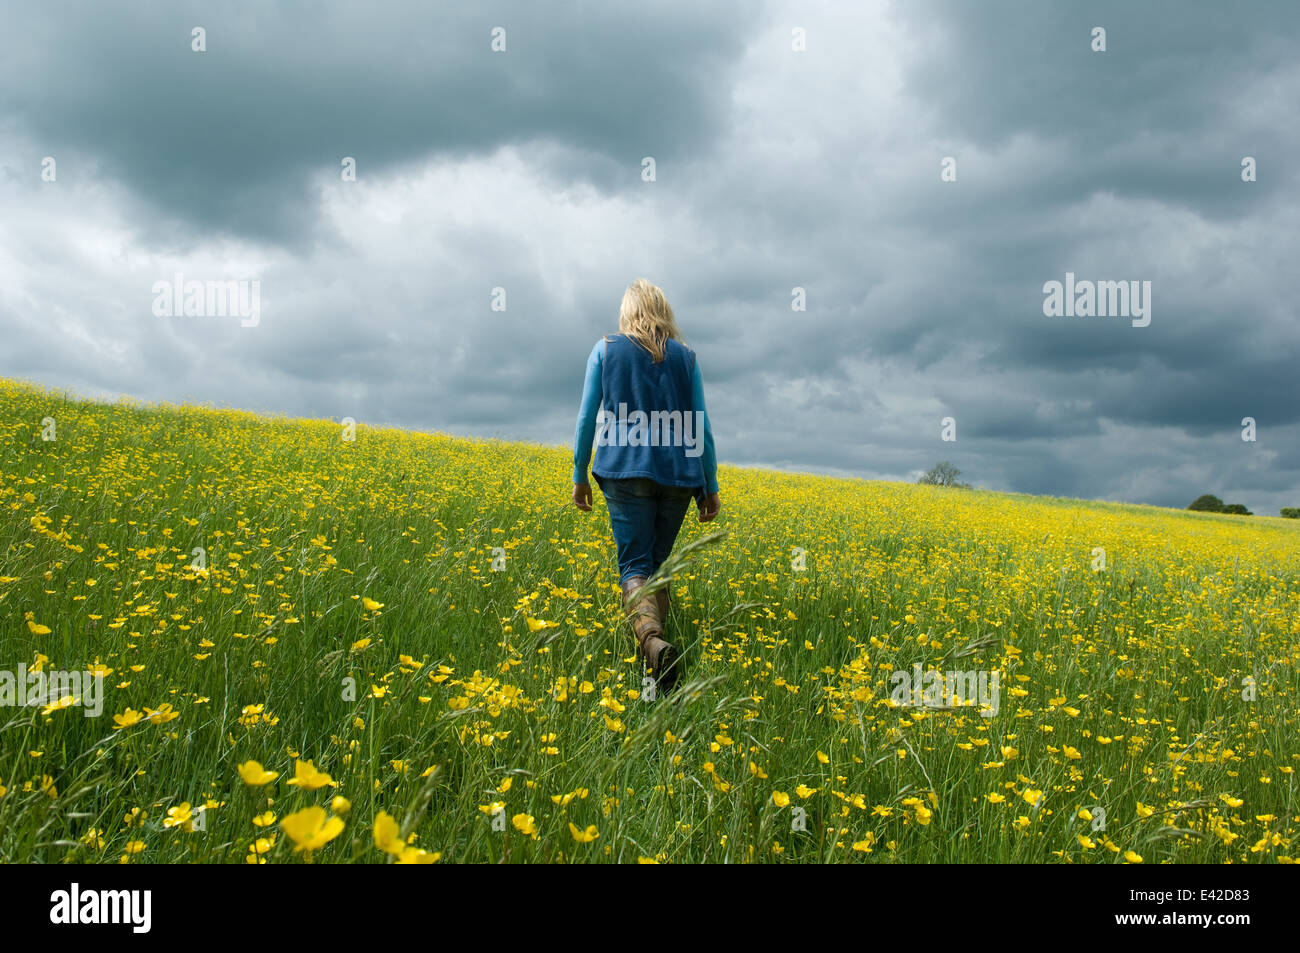 Woman walking in field of buttercups Stock Photo